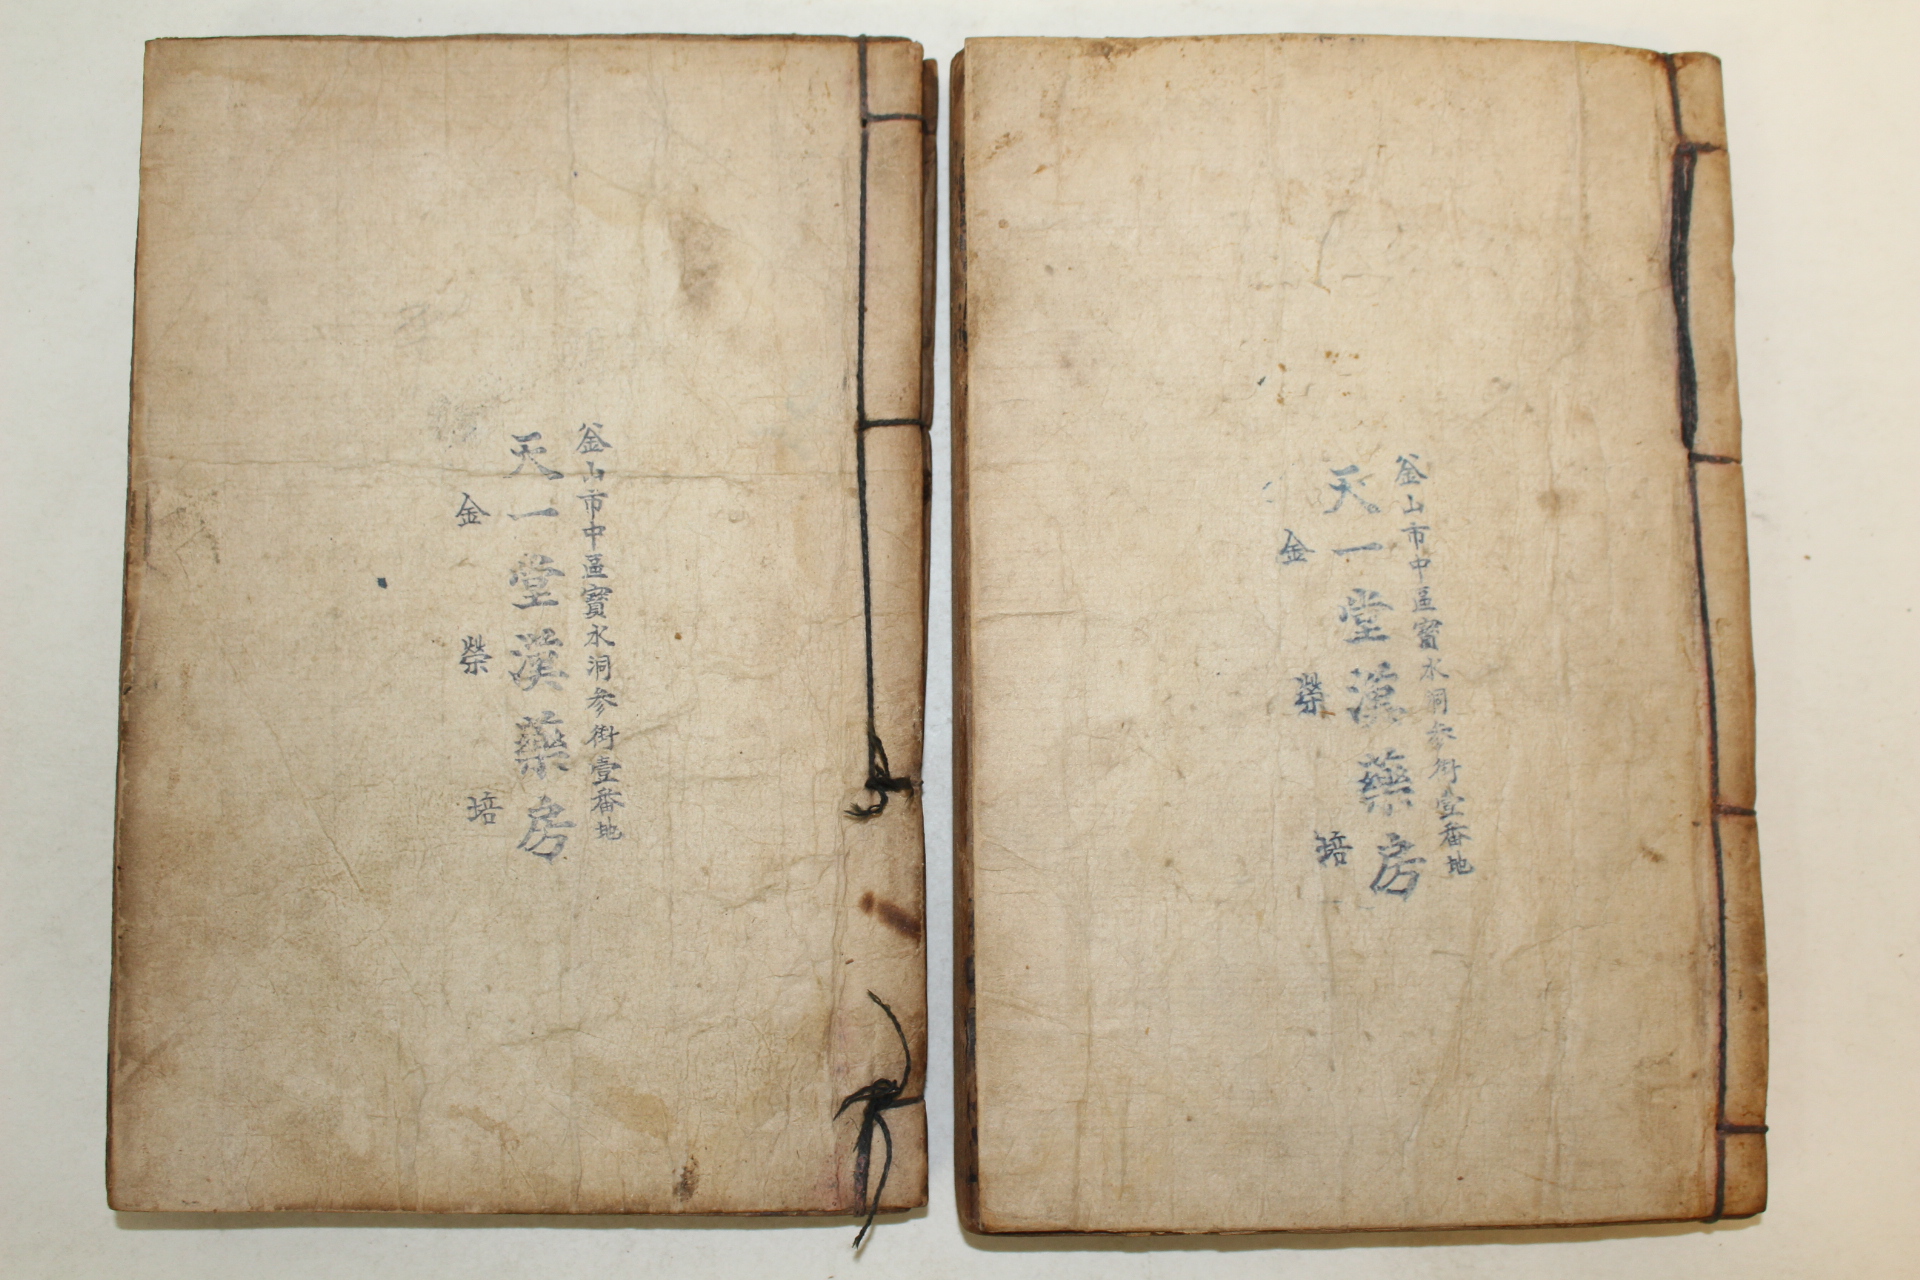 1891년 중국상해본의서 증보정속험방신편(增補正續驗方新編)16권2책합본 완질